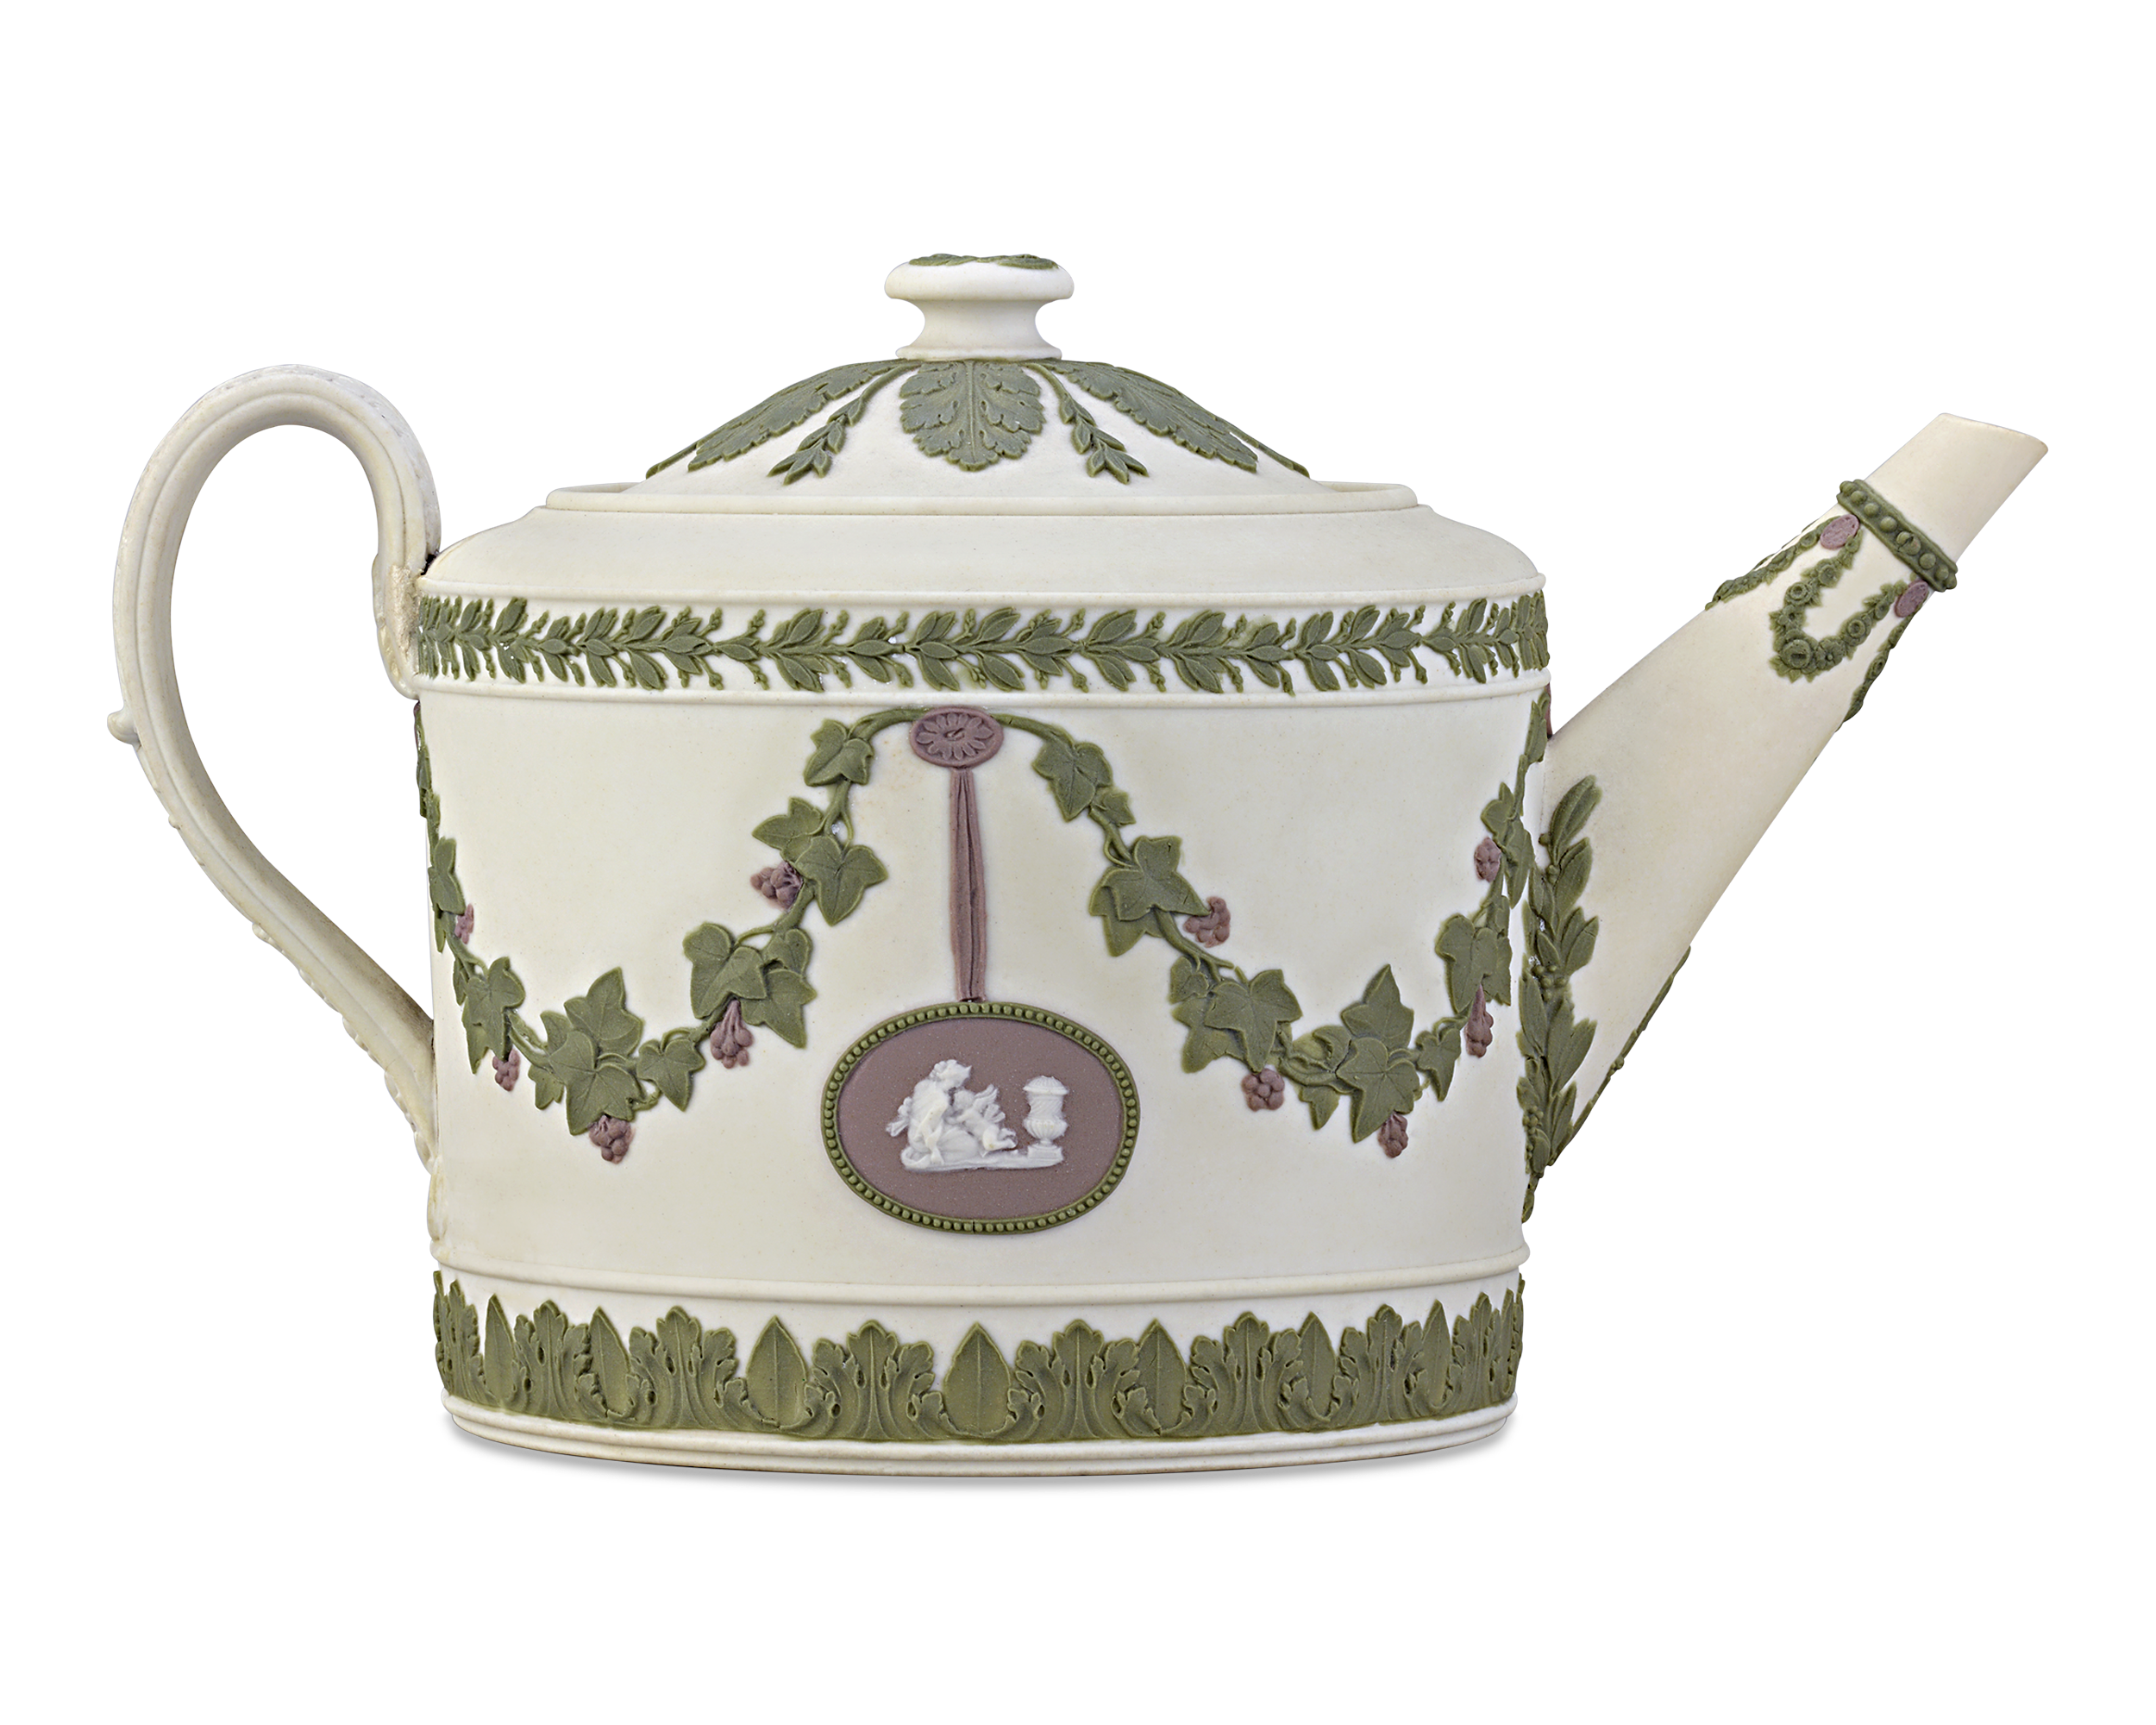 Wedgwood Tri-color Jasperware Teapot